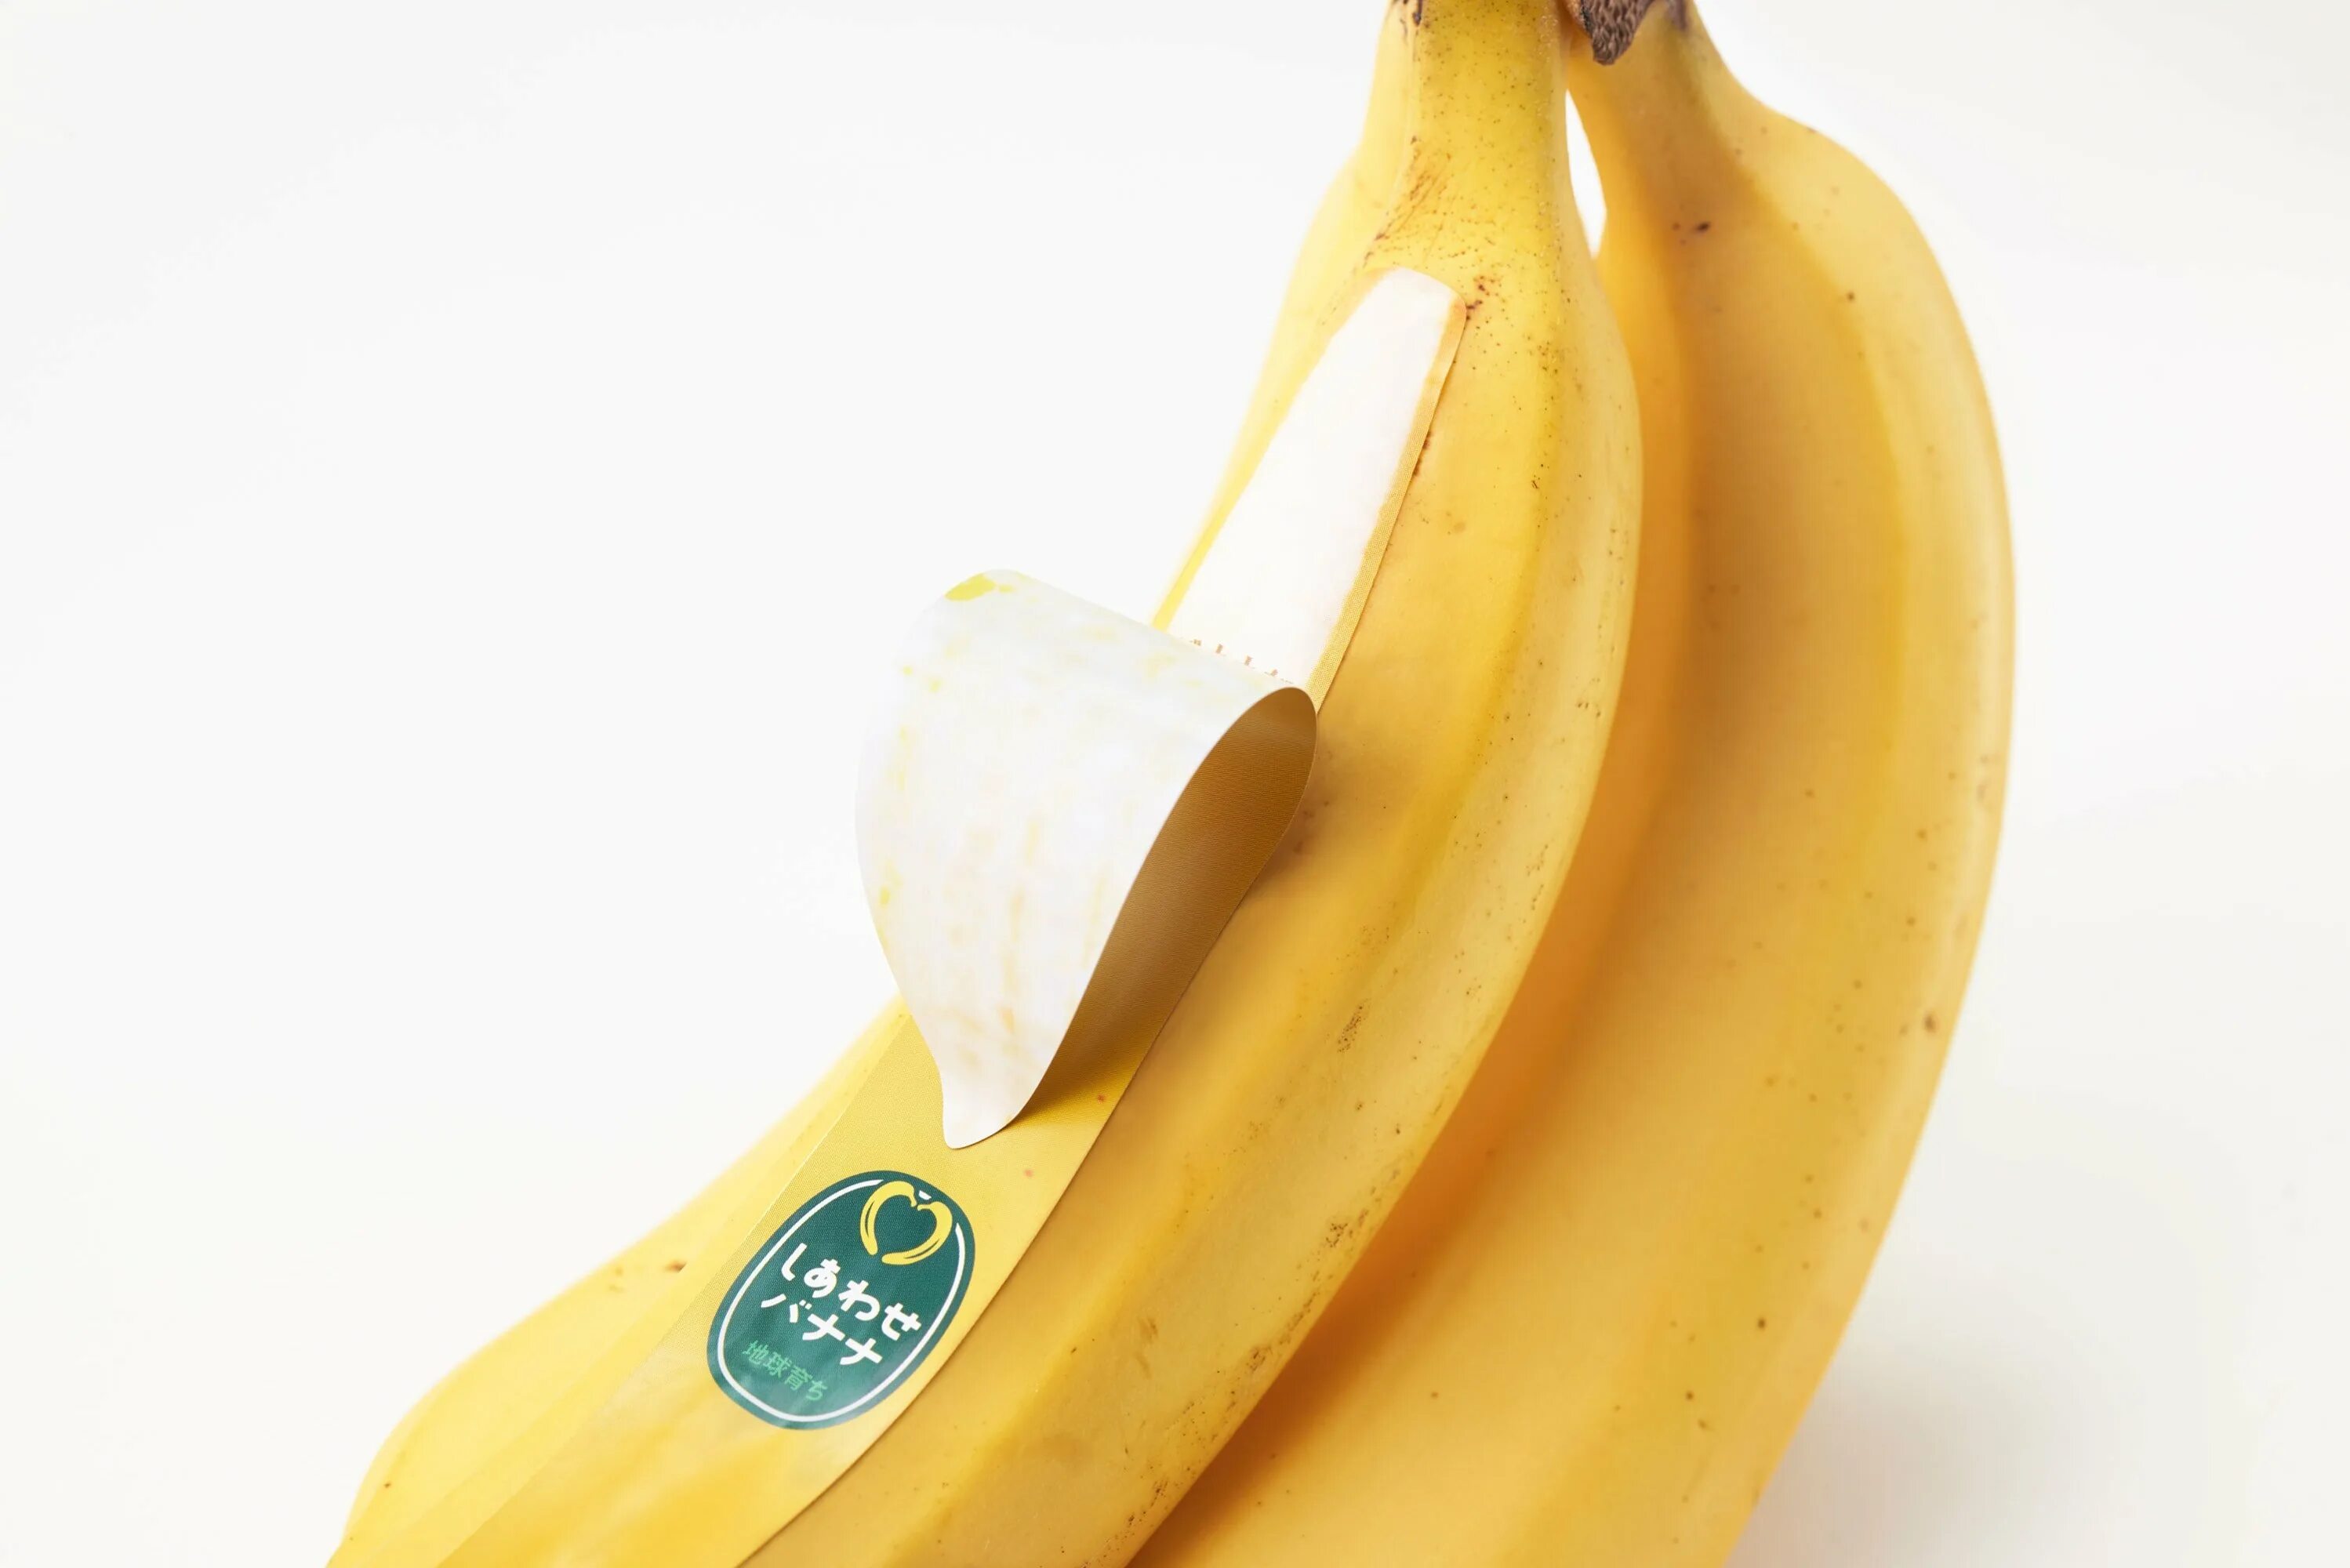 Где можно купит банан. Бананы в упаковке. Упаковка в виде банана. Банан японский. Упаковка бананов в Японии.